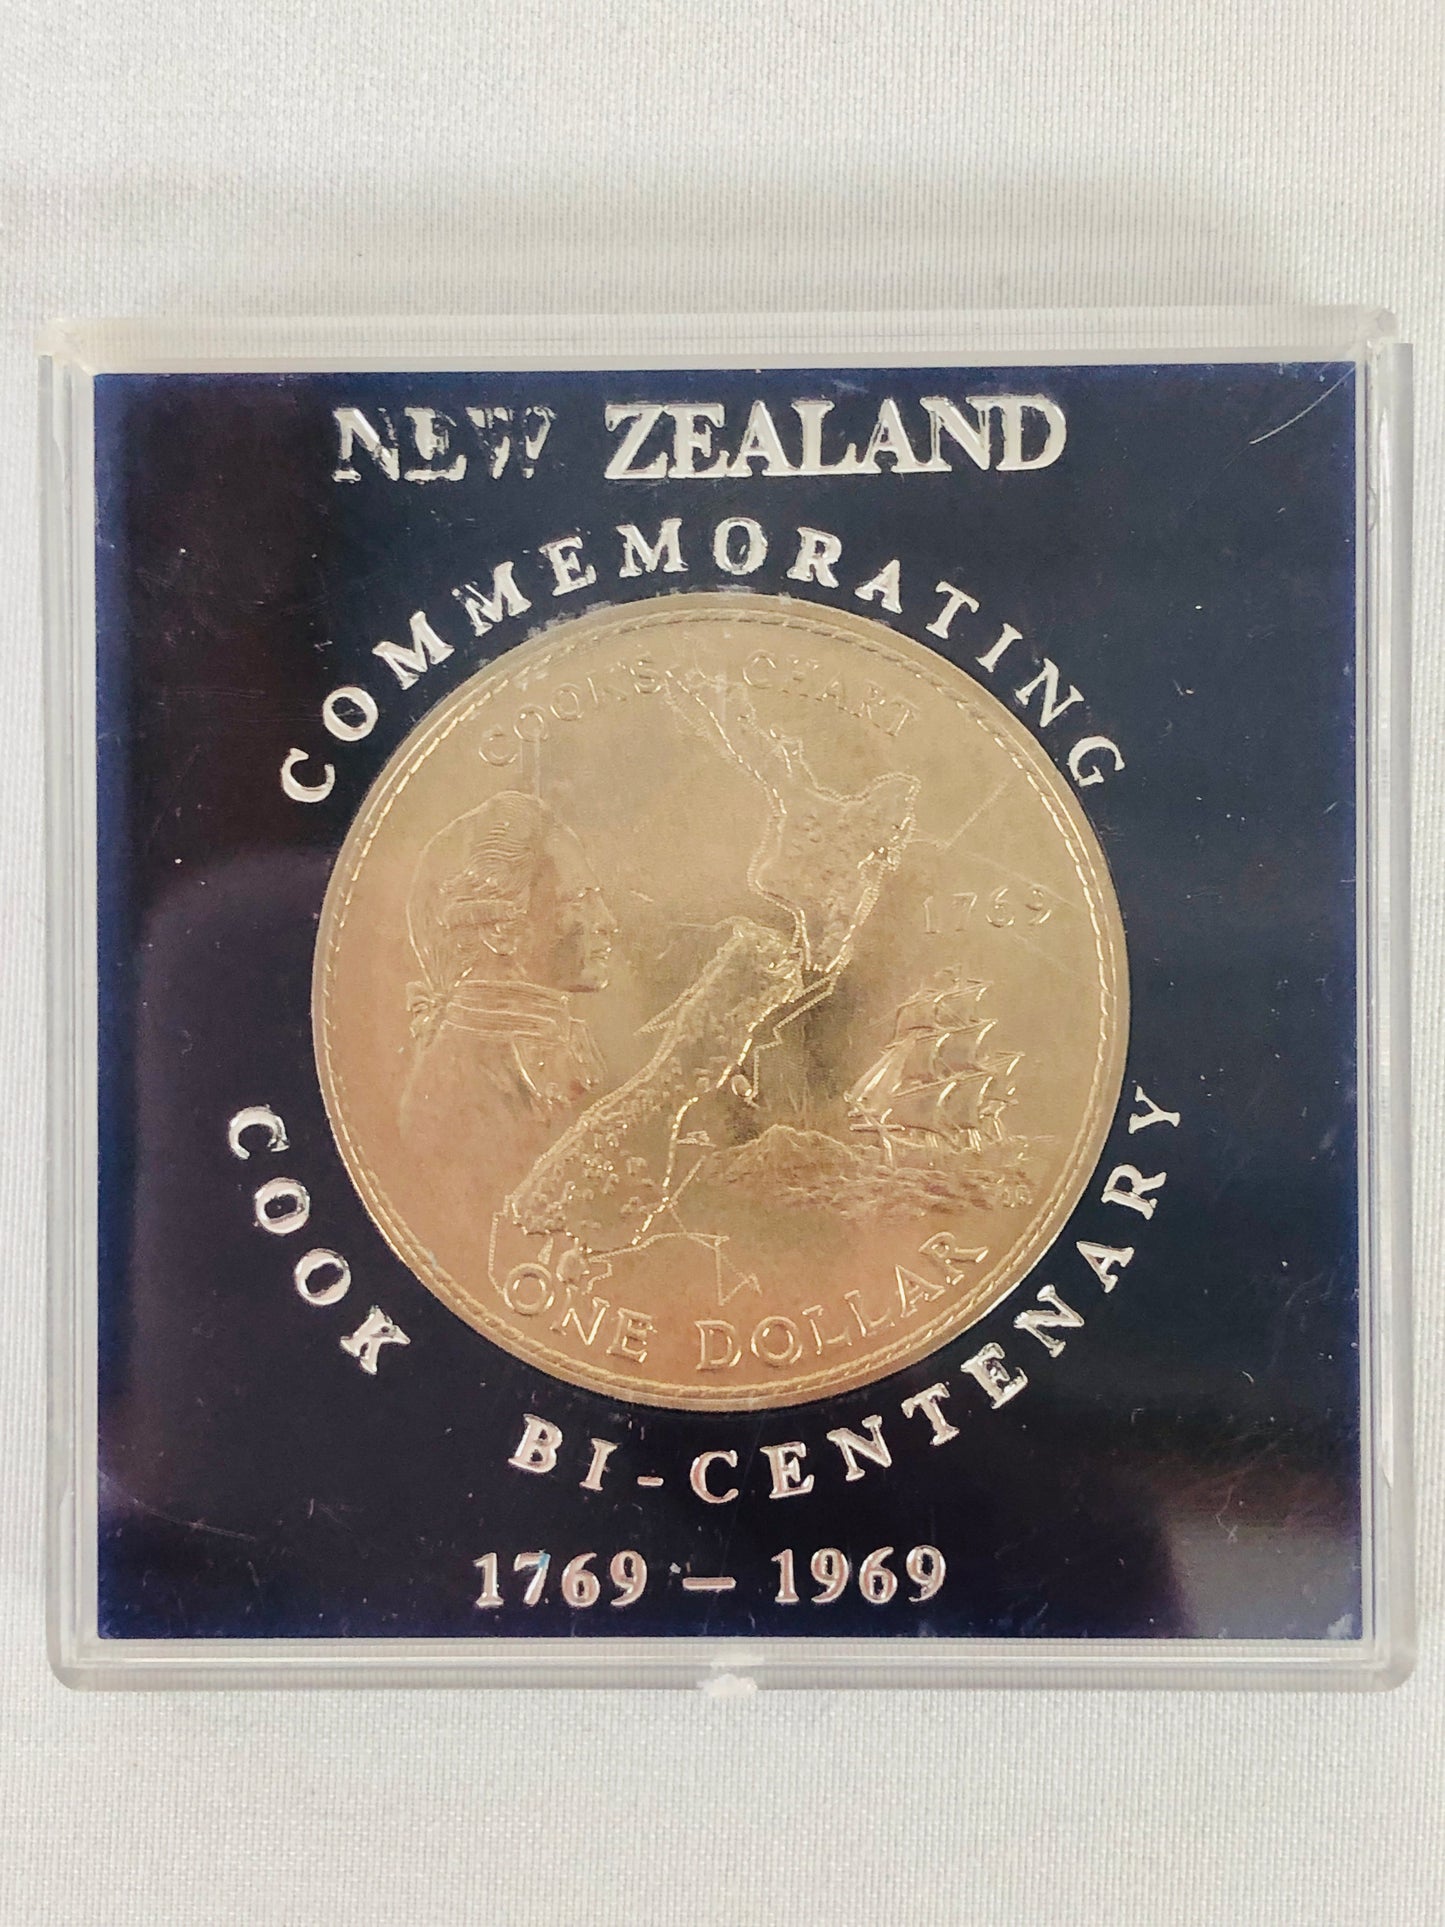 
                  
                    5 x NZ$1 1969 COOK BI-CENTENARY 1769-1969 Coins (14269)
                  
                